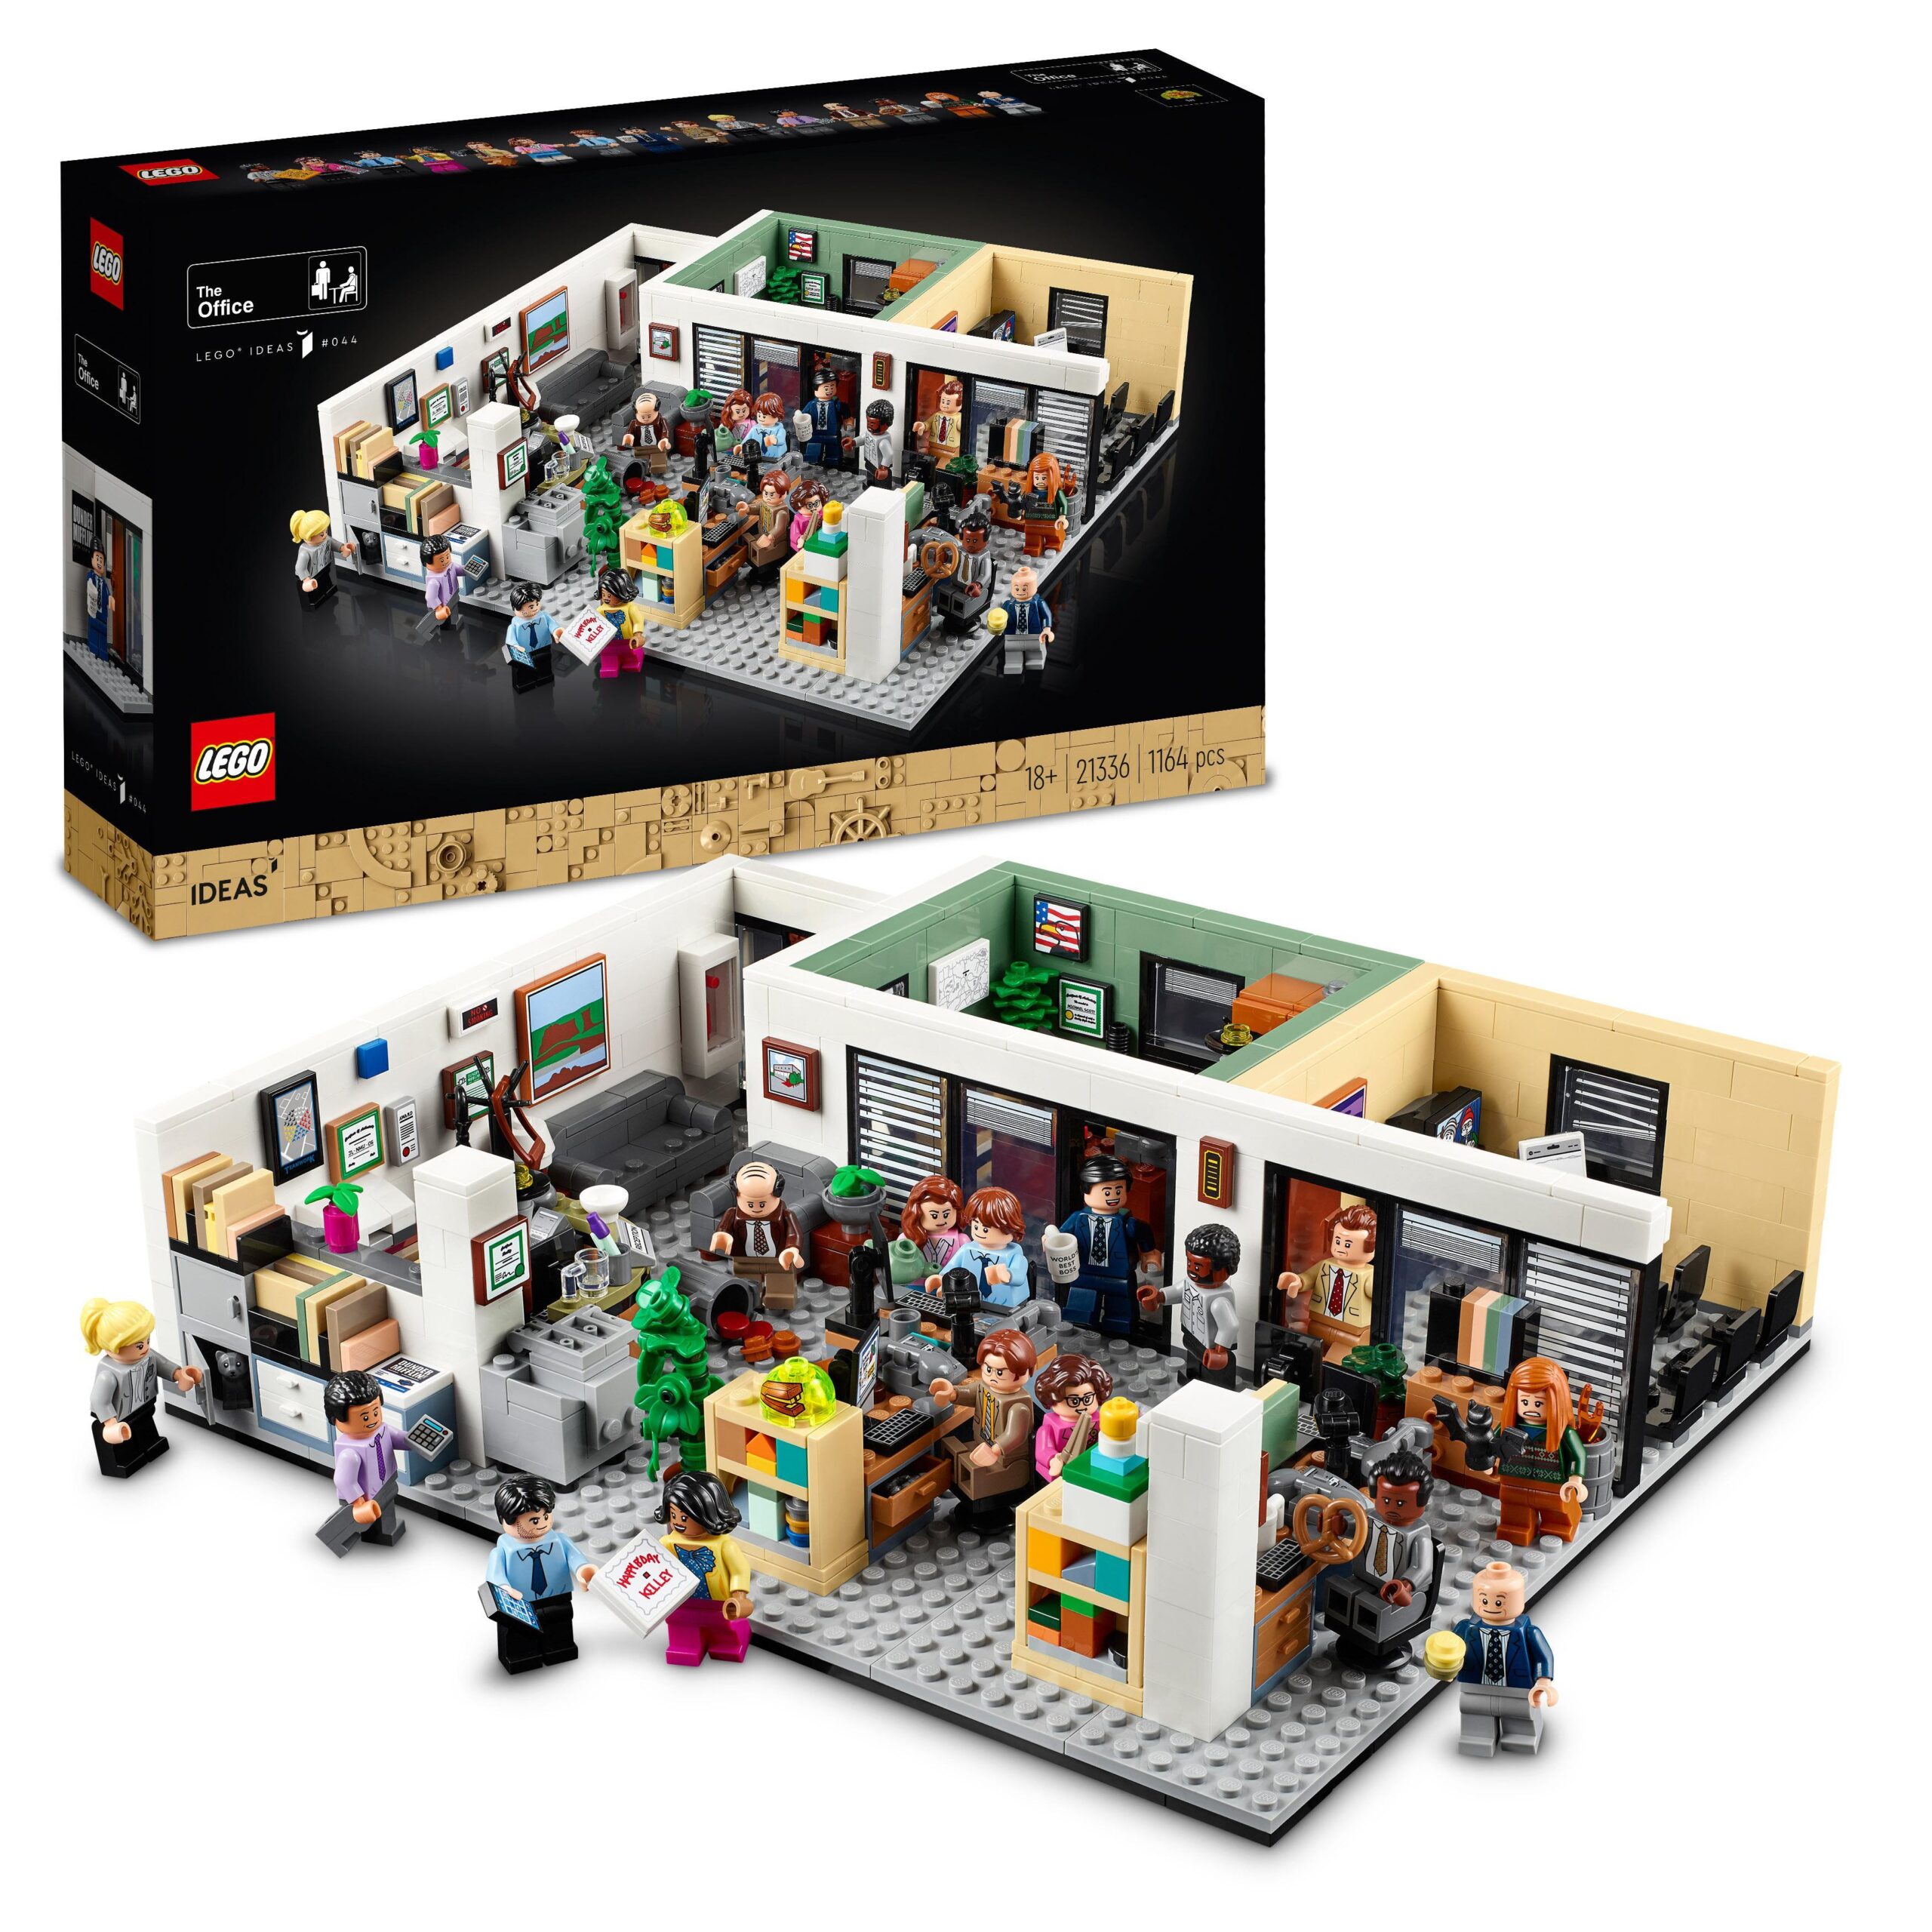 LEGO Fantozzi selezionato tra i 36 nuovi set Ideas che possono diventare  realtà